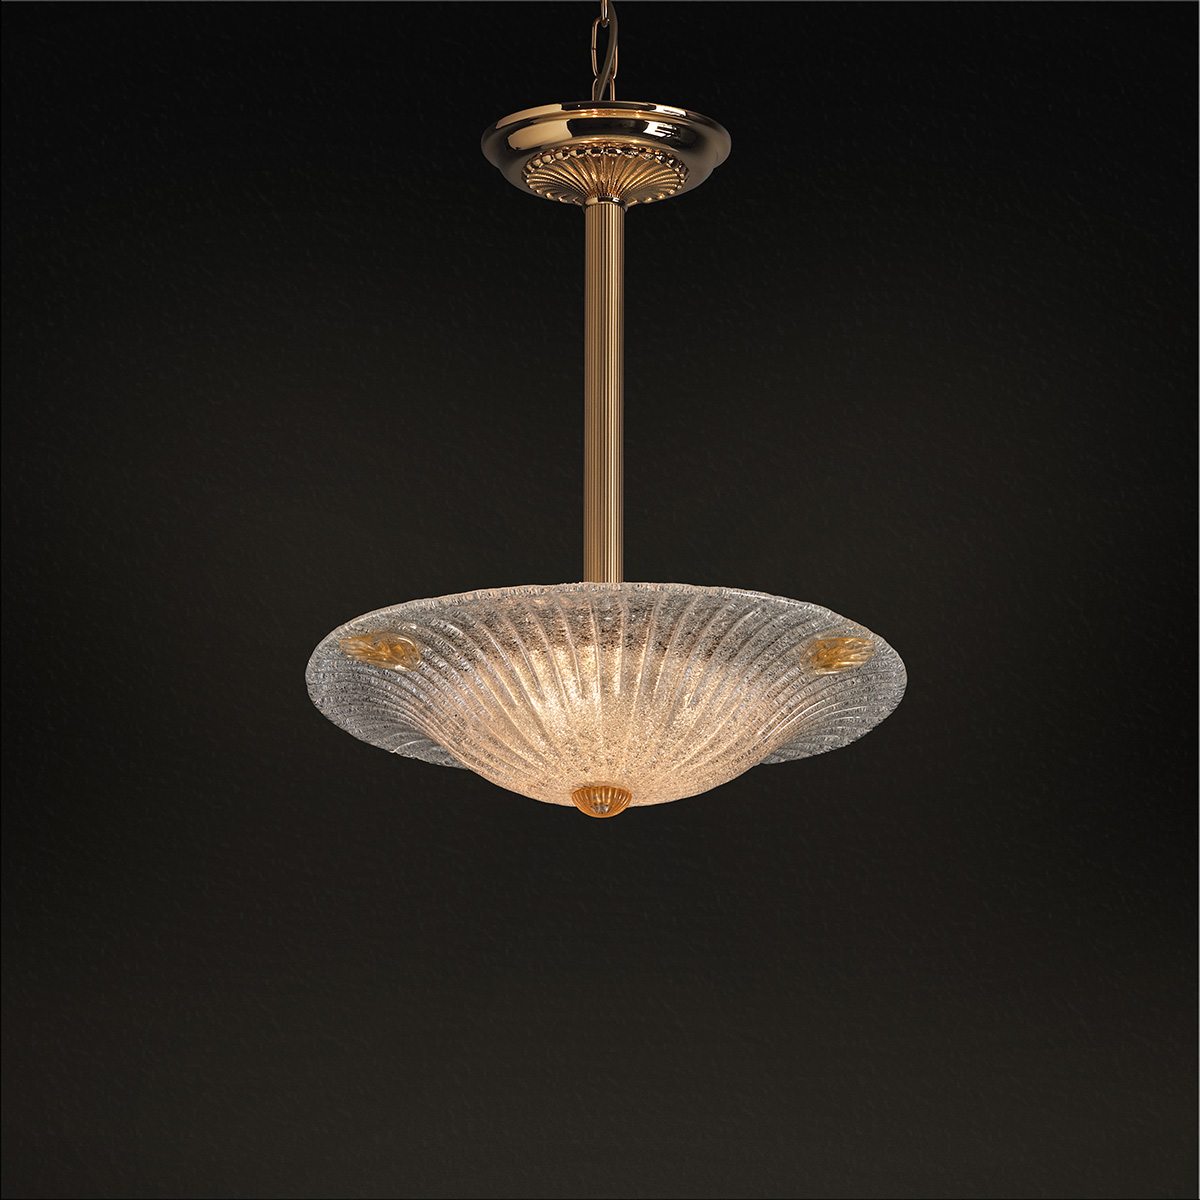 Κλασικό μονόφωτο με κρύσταλλο Μουράνο ΦΥΛΛΟ classic Murano crystal suspension lamp